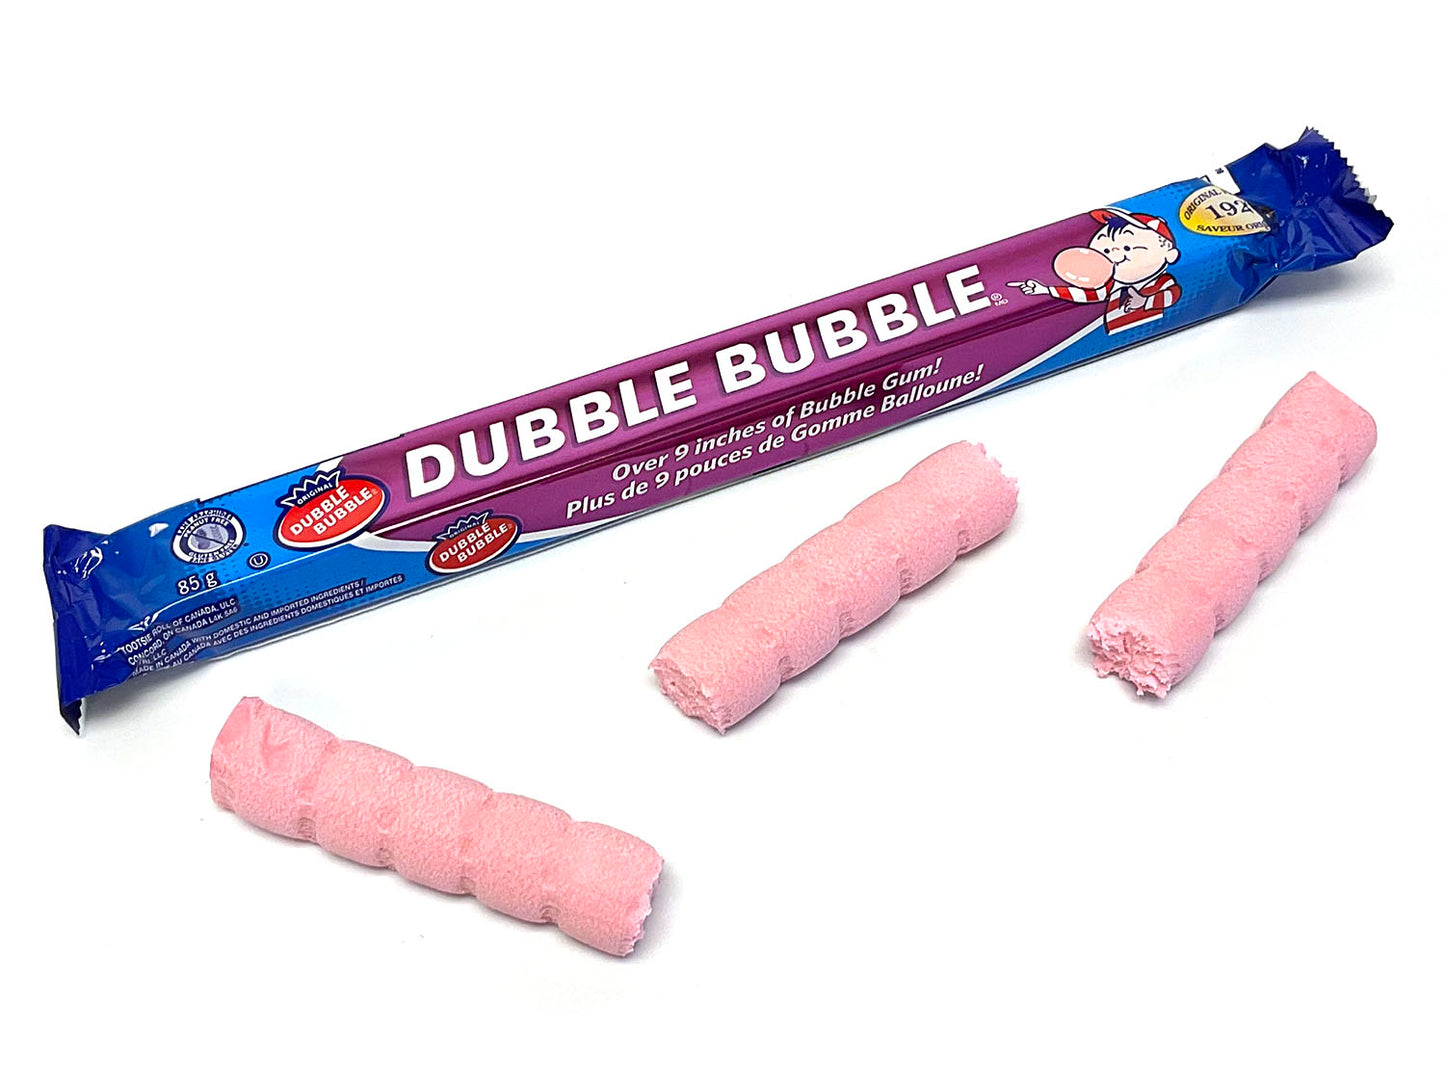 Dubble Bubble Gum - 3 oz Big Bar (1928 flavor)